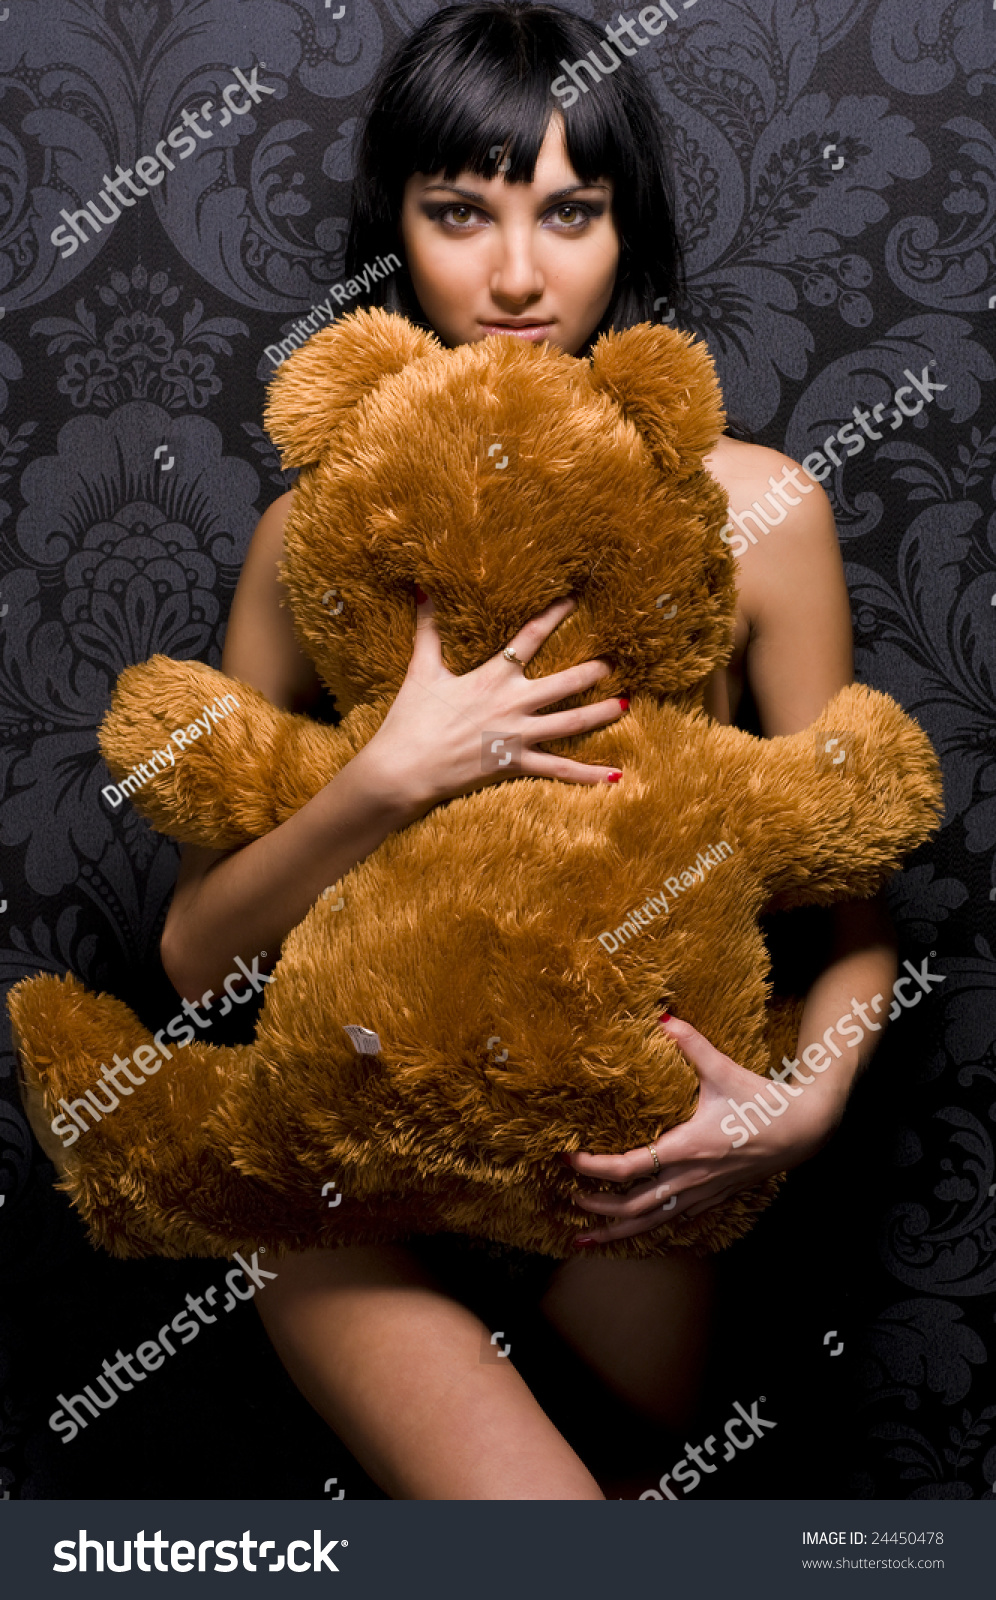 Teddy - nude photos